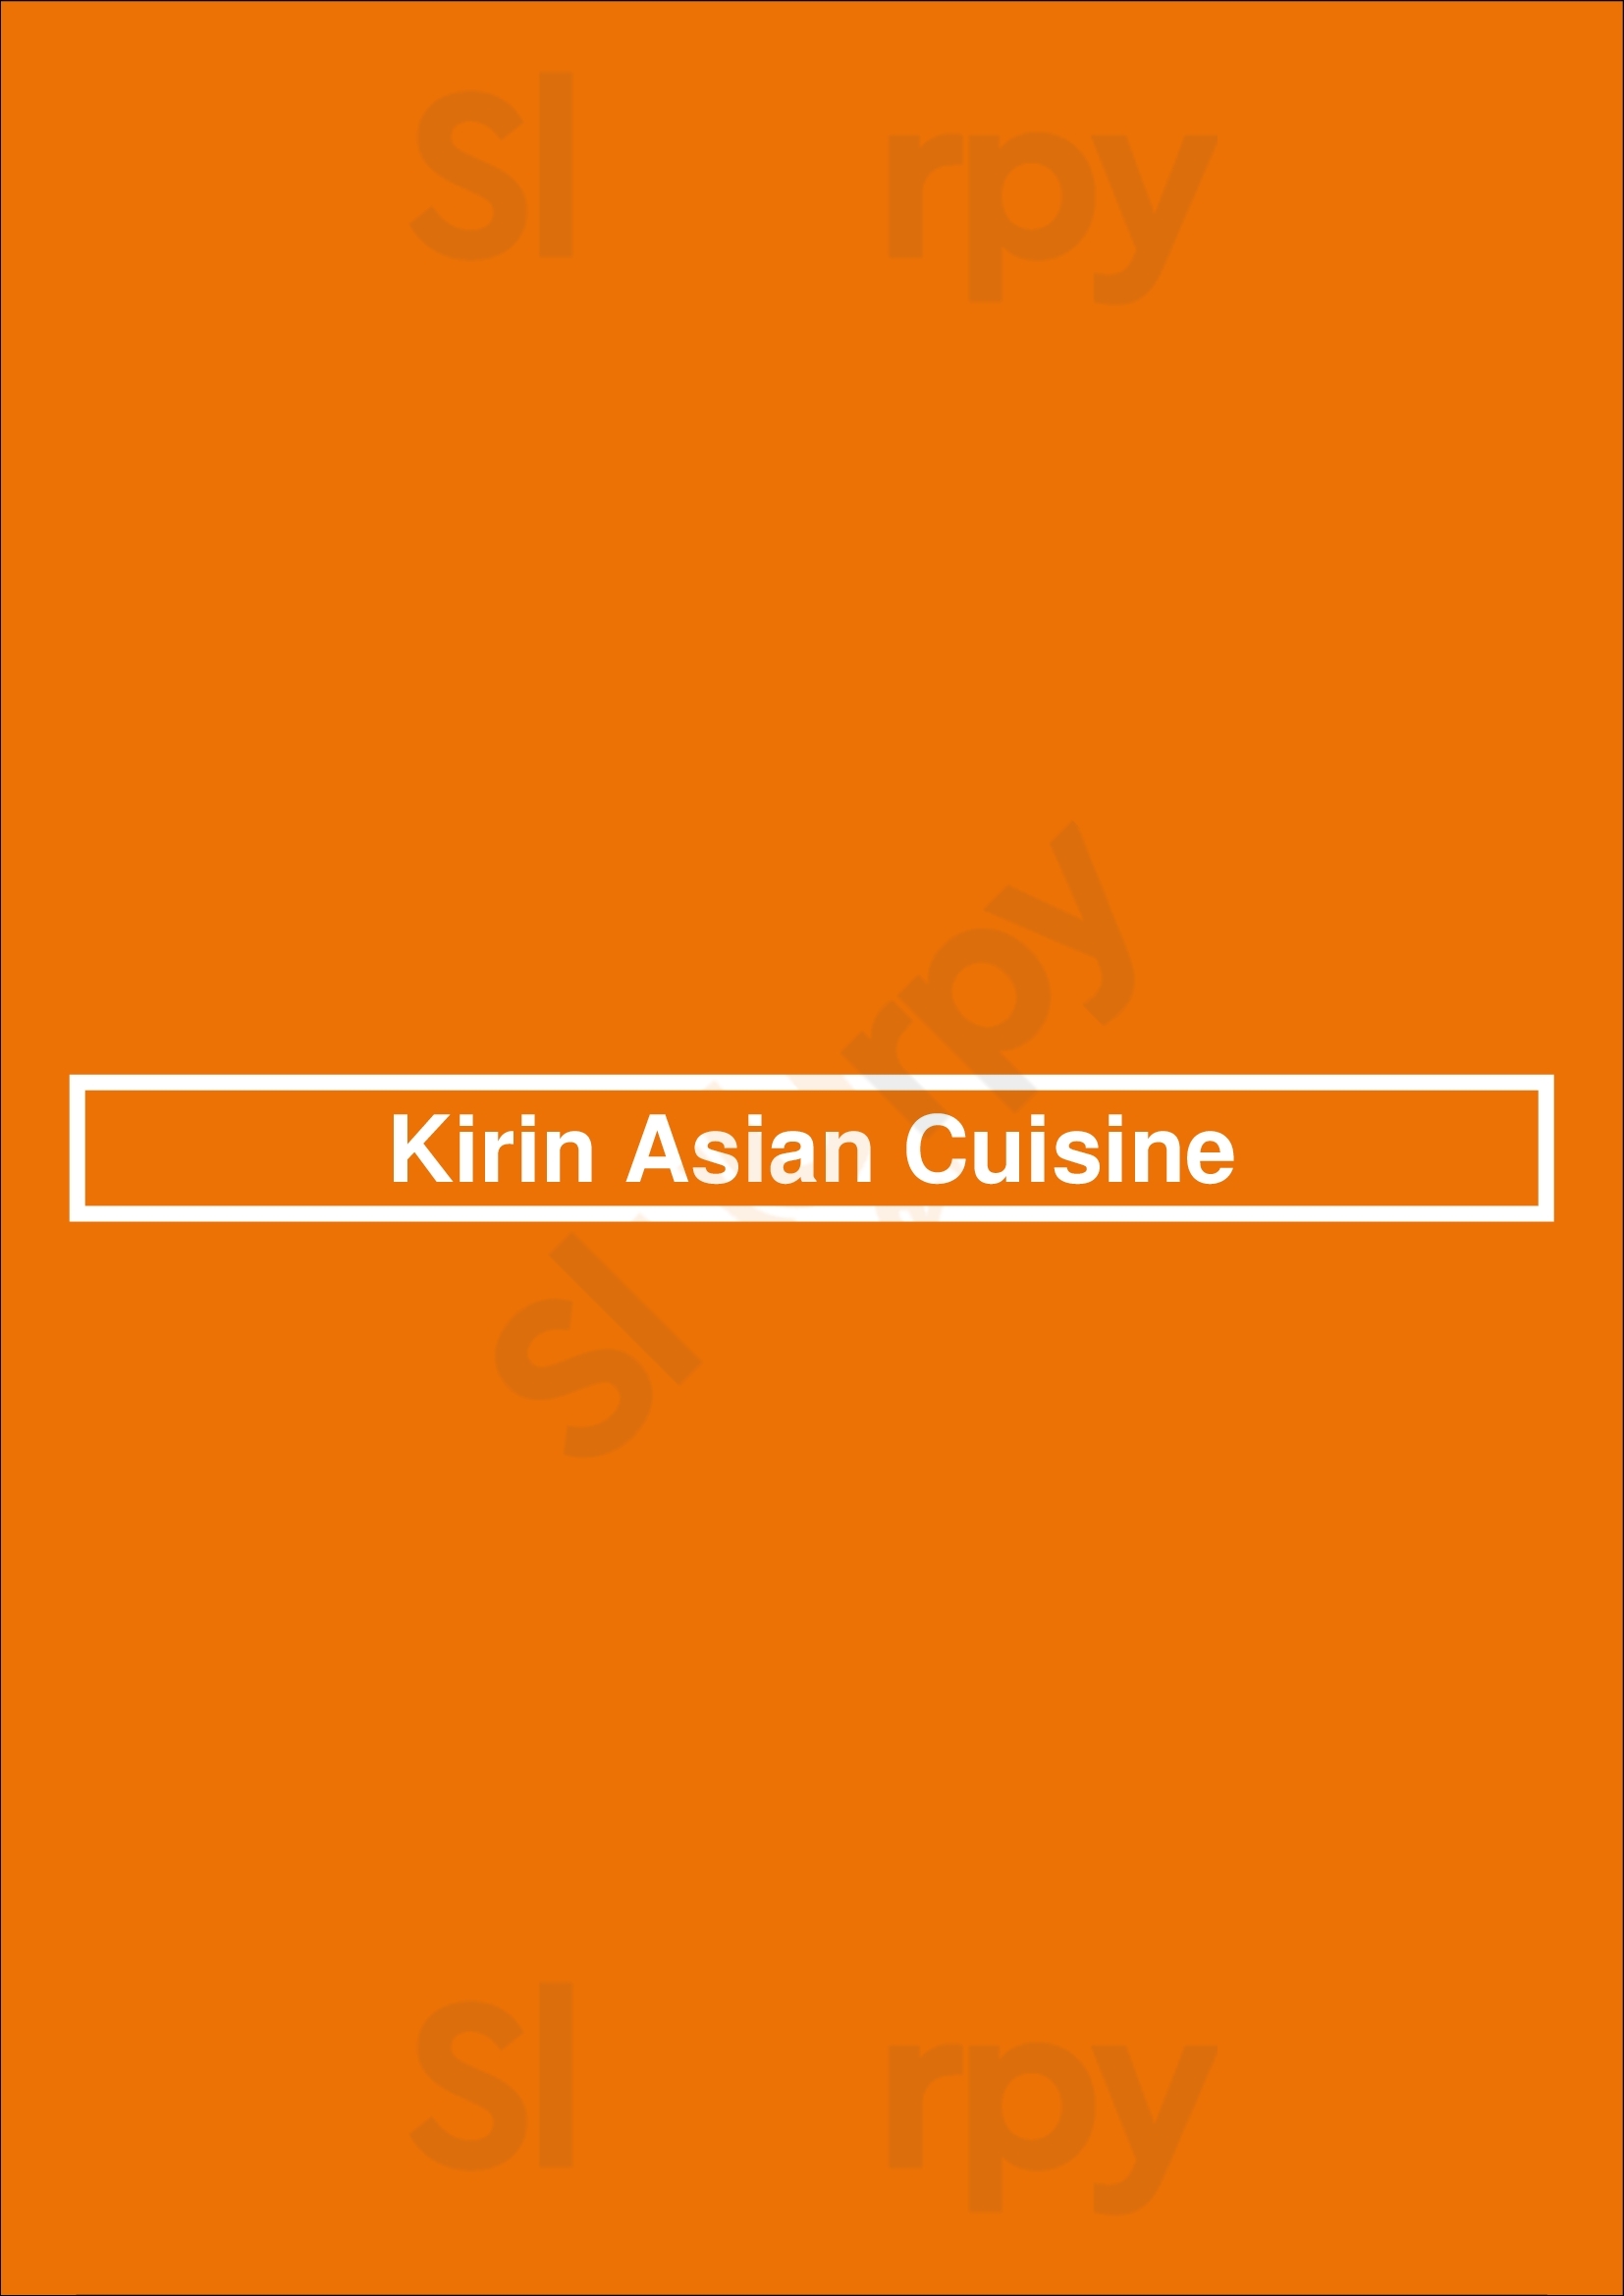 Kirin Asian Cuisine Tulsa Menu - 1